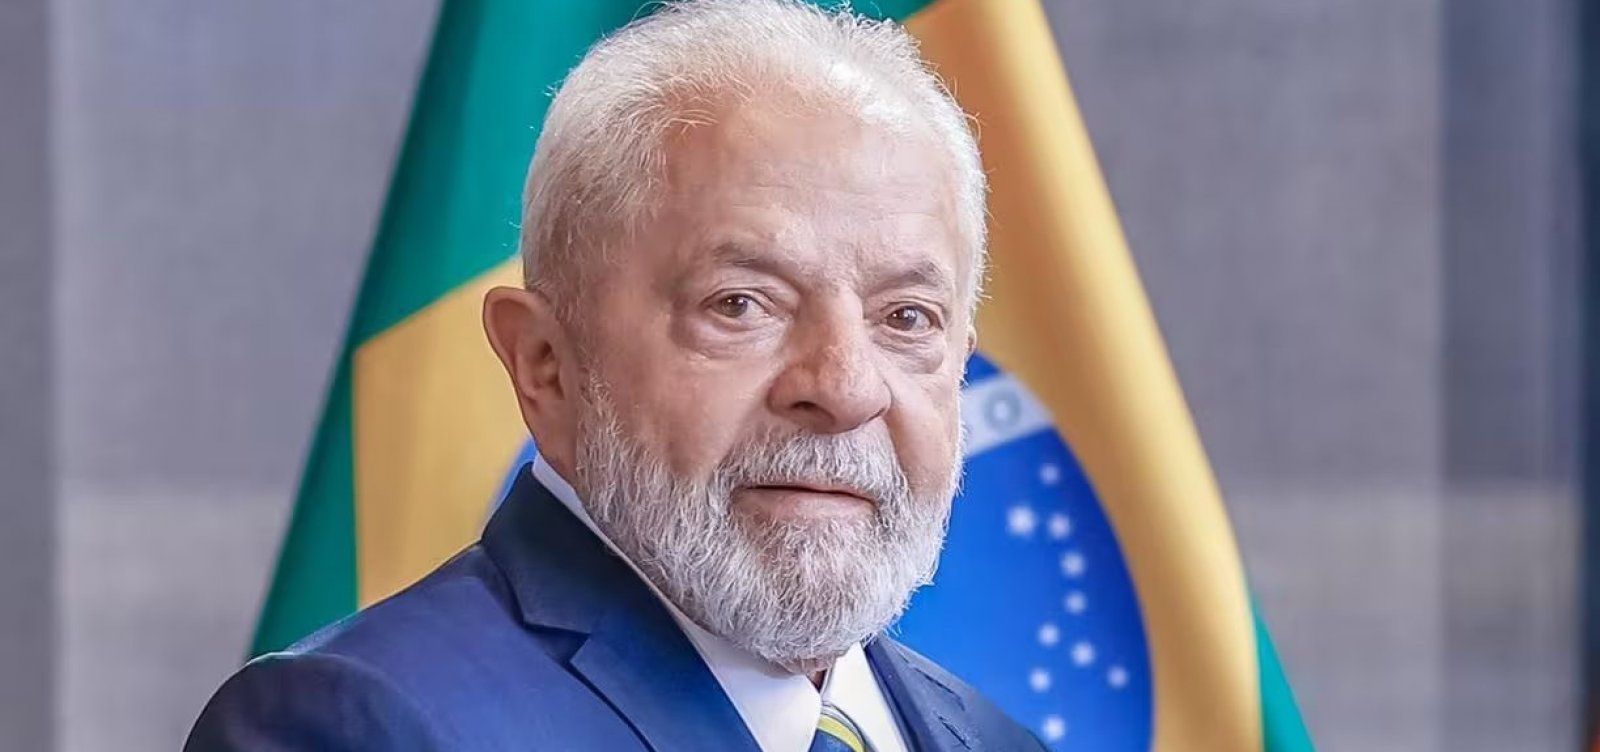 Lula cogita exonerar diretor-adjunto da Abin caso seja comprovada participação do servidor em espionagem